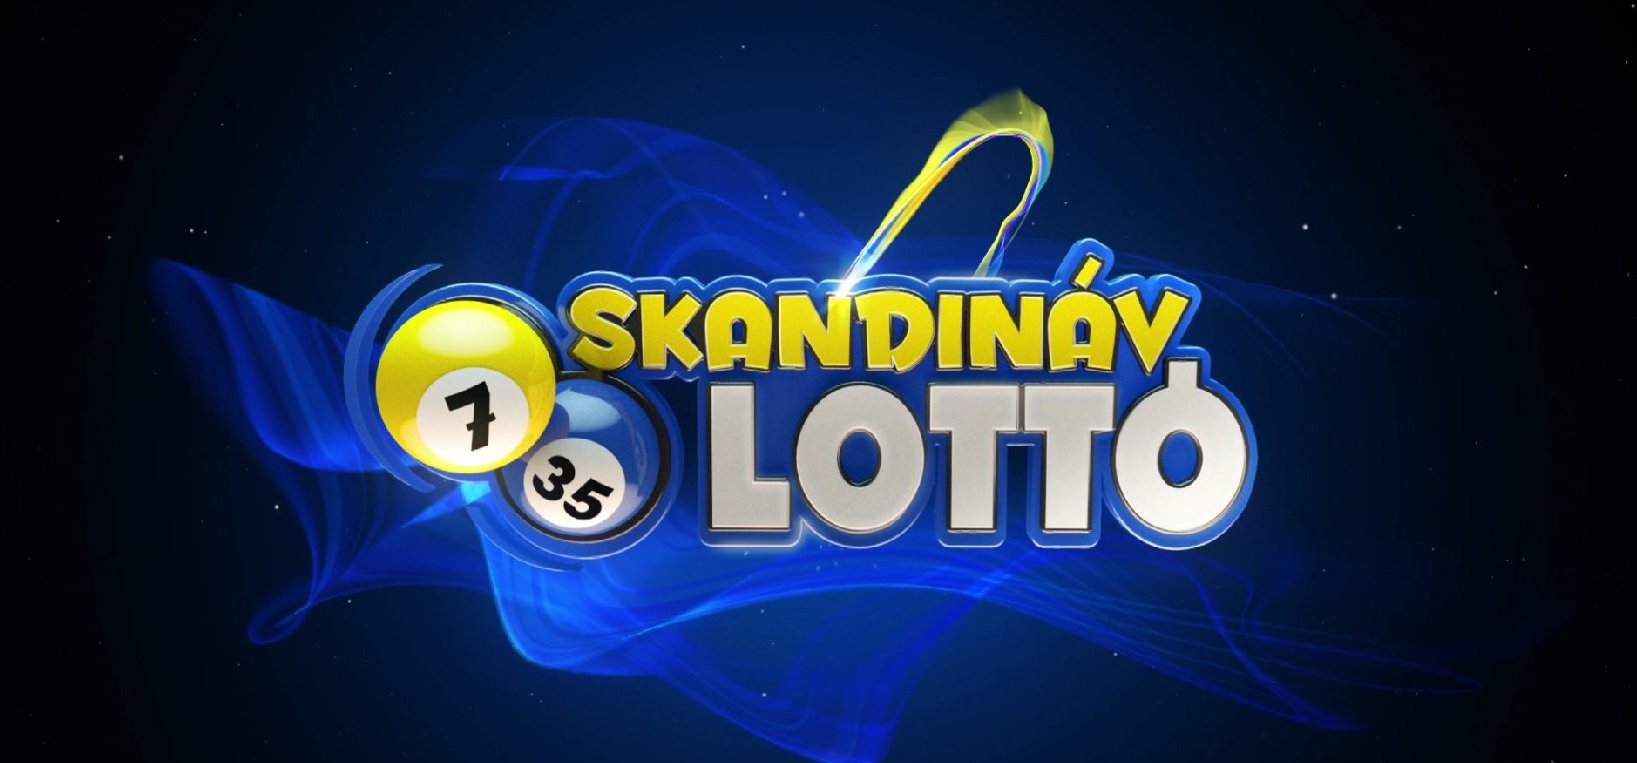 Vajon van milliomosa a Skandináv lottónak? Lássuk a nyerőszámokat!